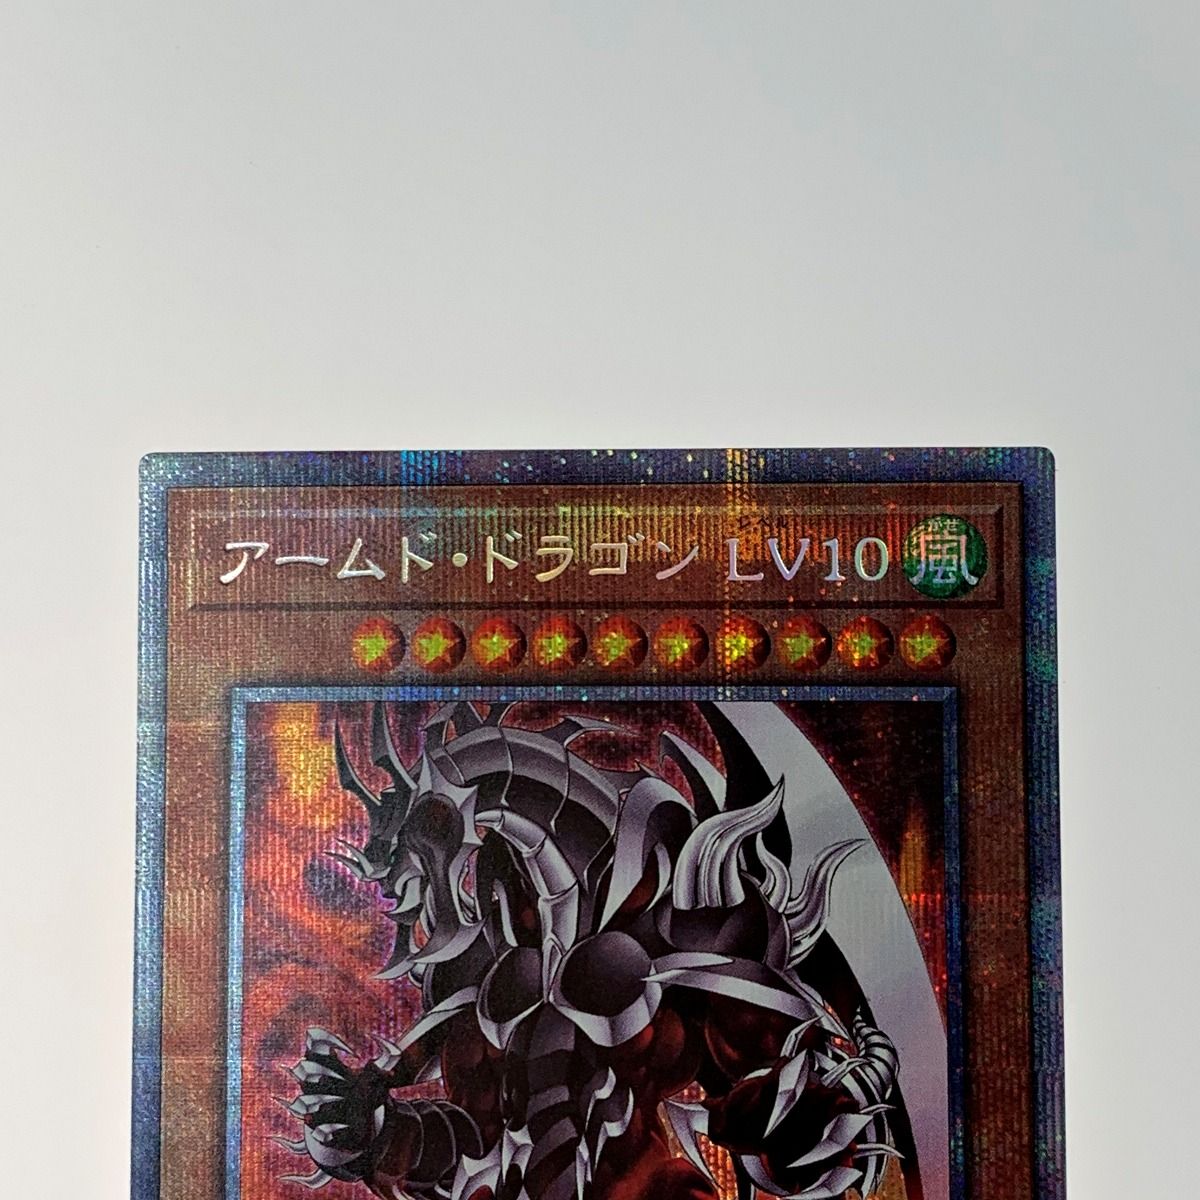 ☆☆ 遊戯王 トレカ《 アームド・ドラゴン LV10 》プリズマティックシークレット / BLVO-JPS01